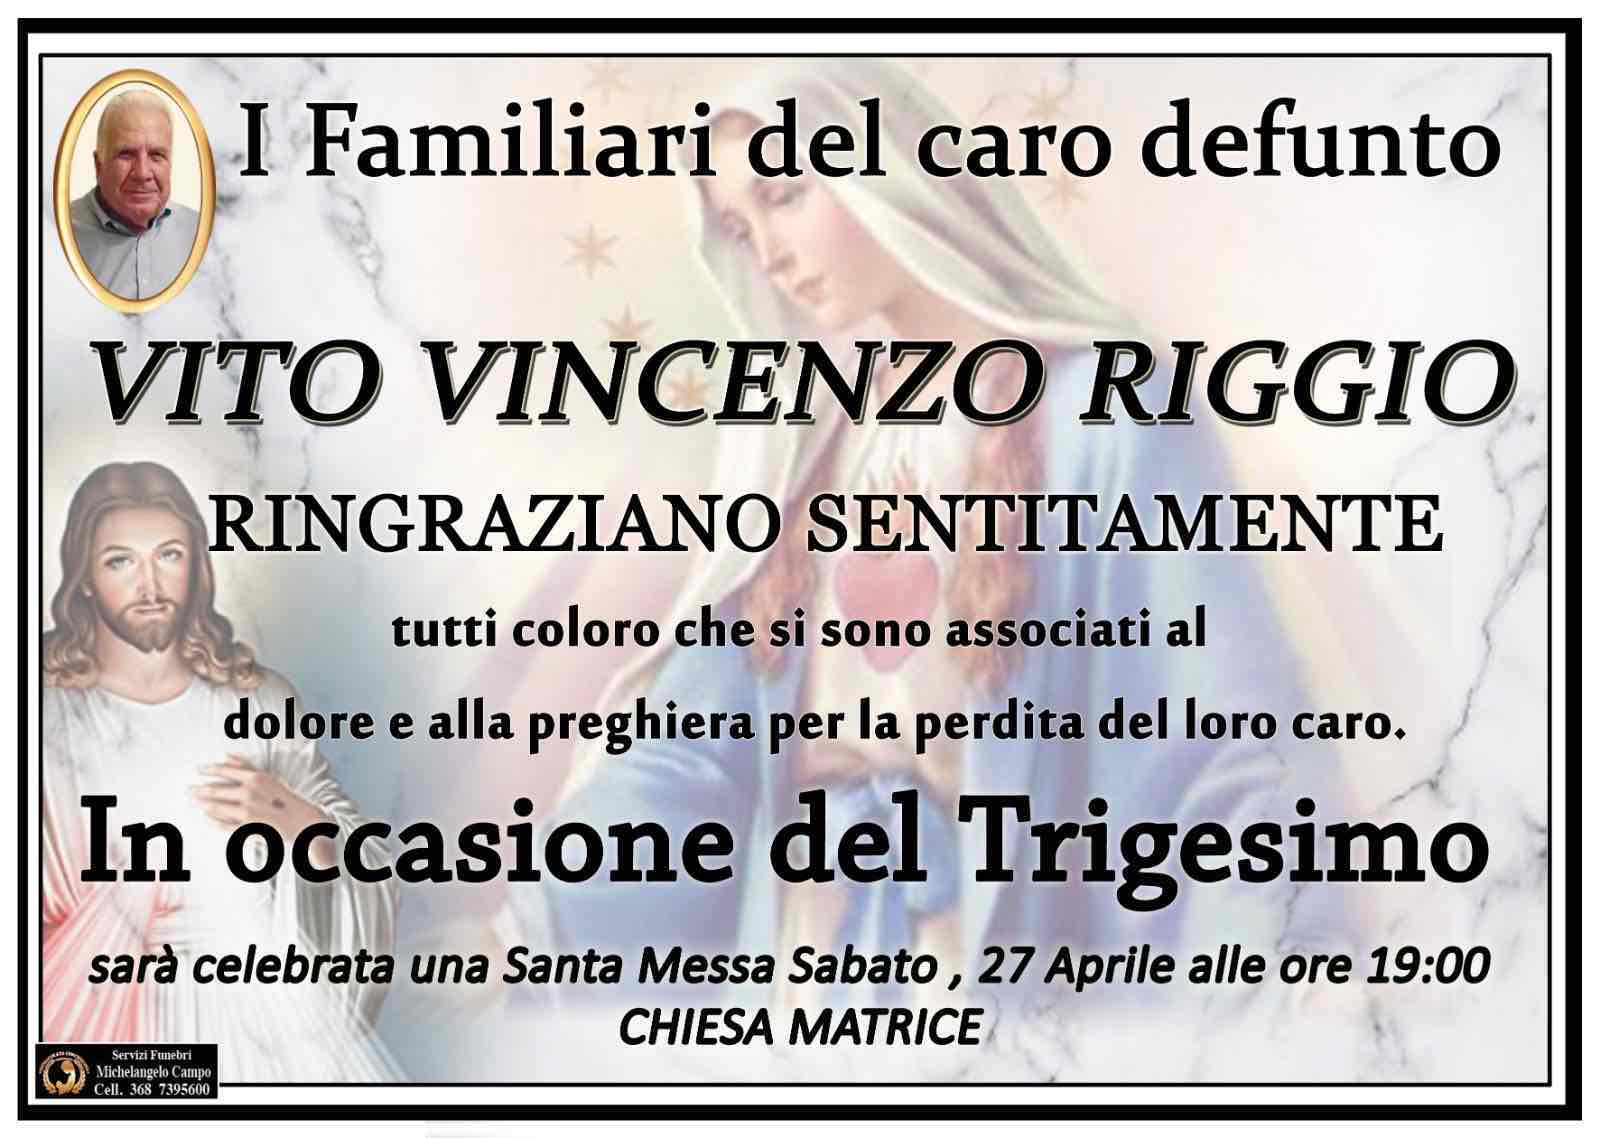 Vito Vincenzo Riggio